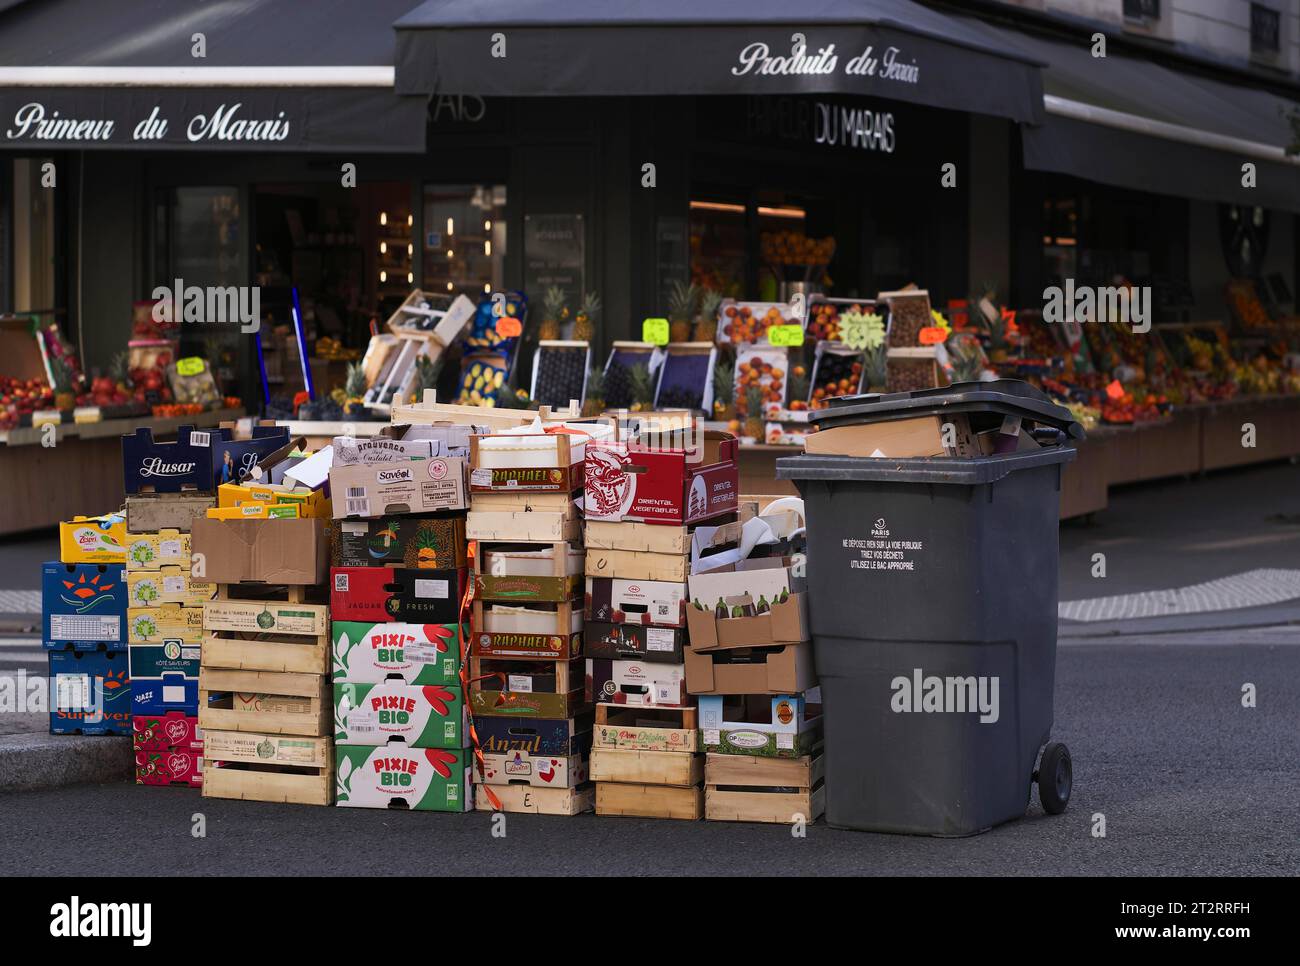 Rubbish, bins, boxes waiting for rubbish collection, Primeur du Marais fruit and vegetable shop, Marais Jewish quarter, Village St. Paul, Paris Stock Photo